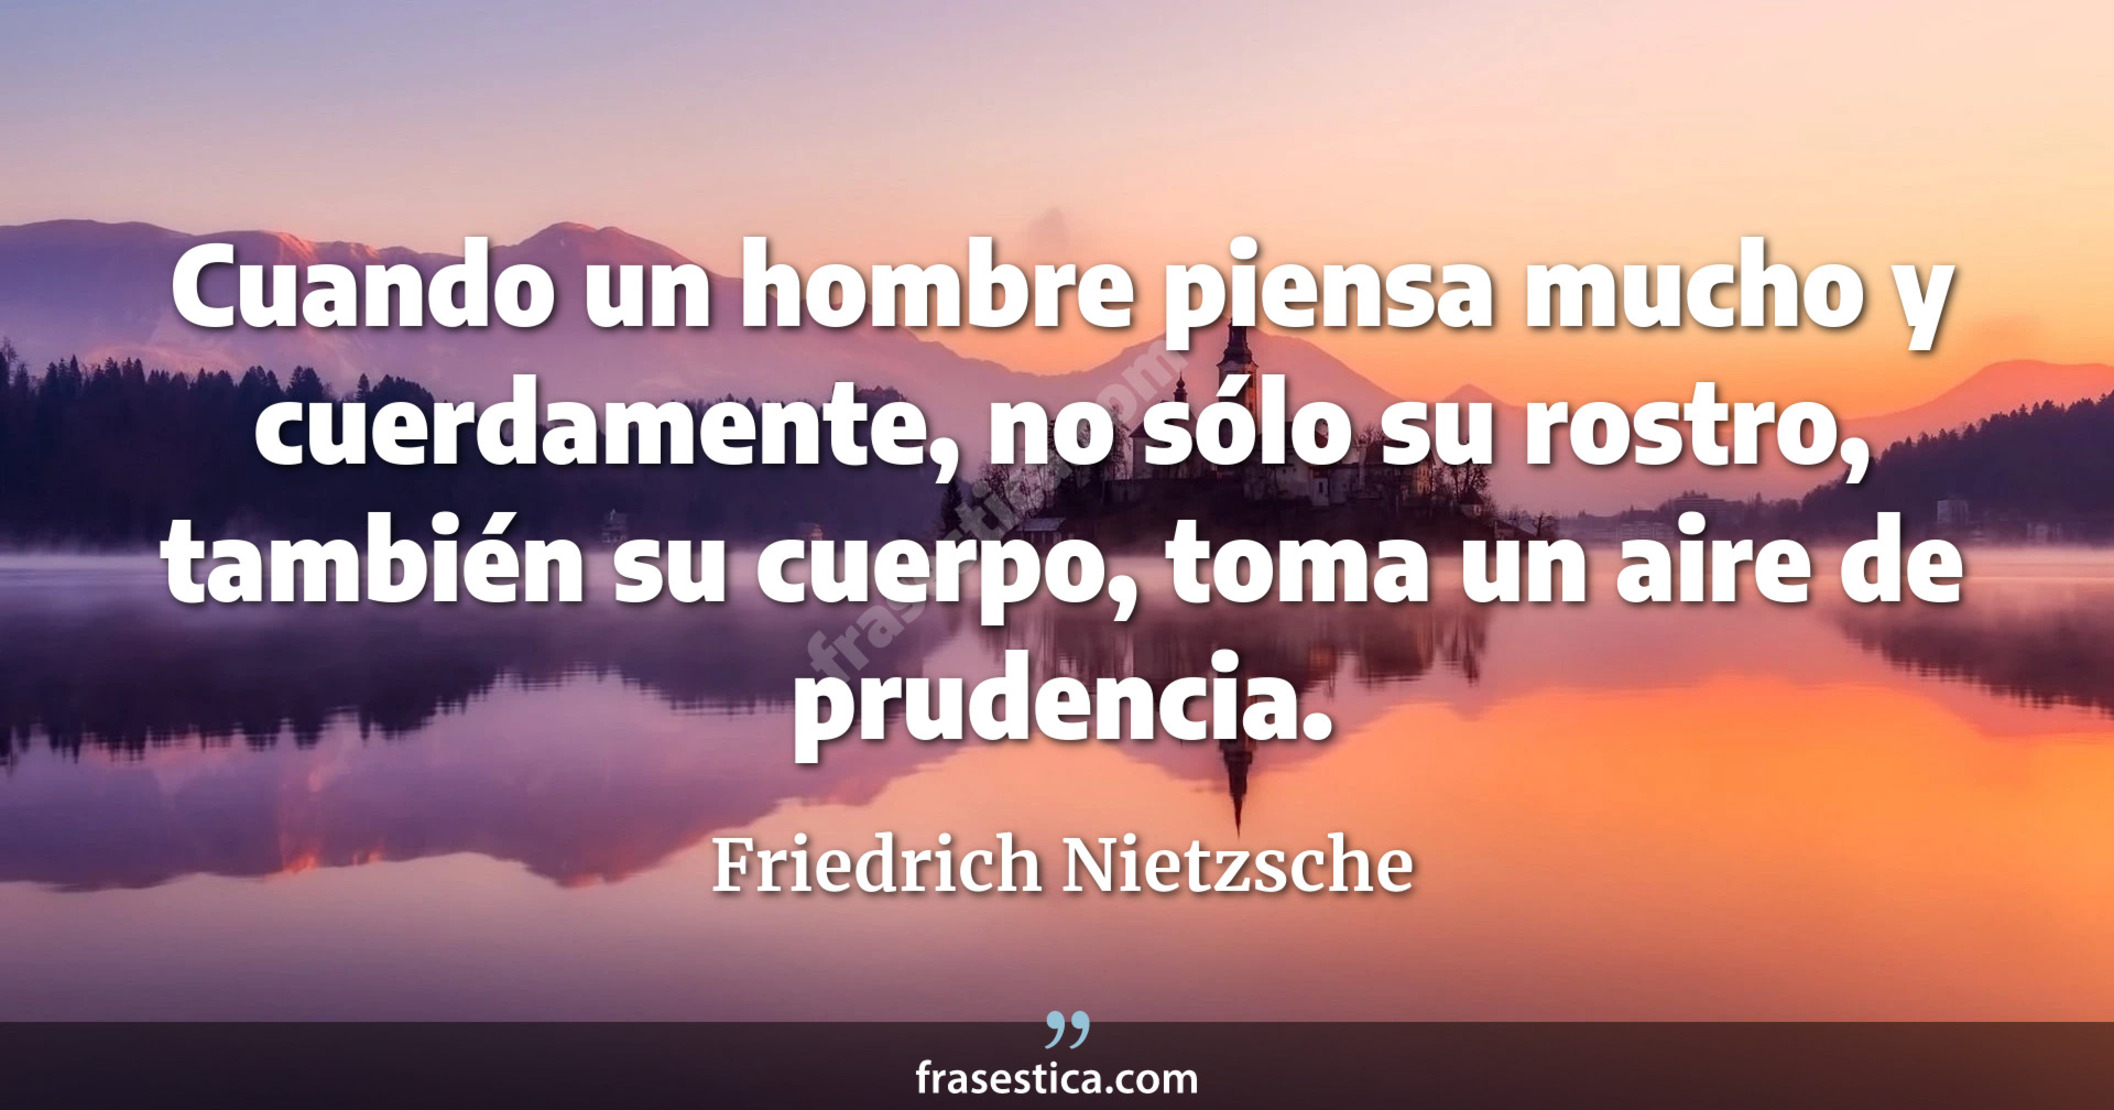 Cuando un hombre piensa mucho y cuerdamente, no sólo su rostro, también su cuerpo, toma un aire de prudencia. - Friedrich Nietzsche